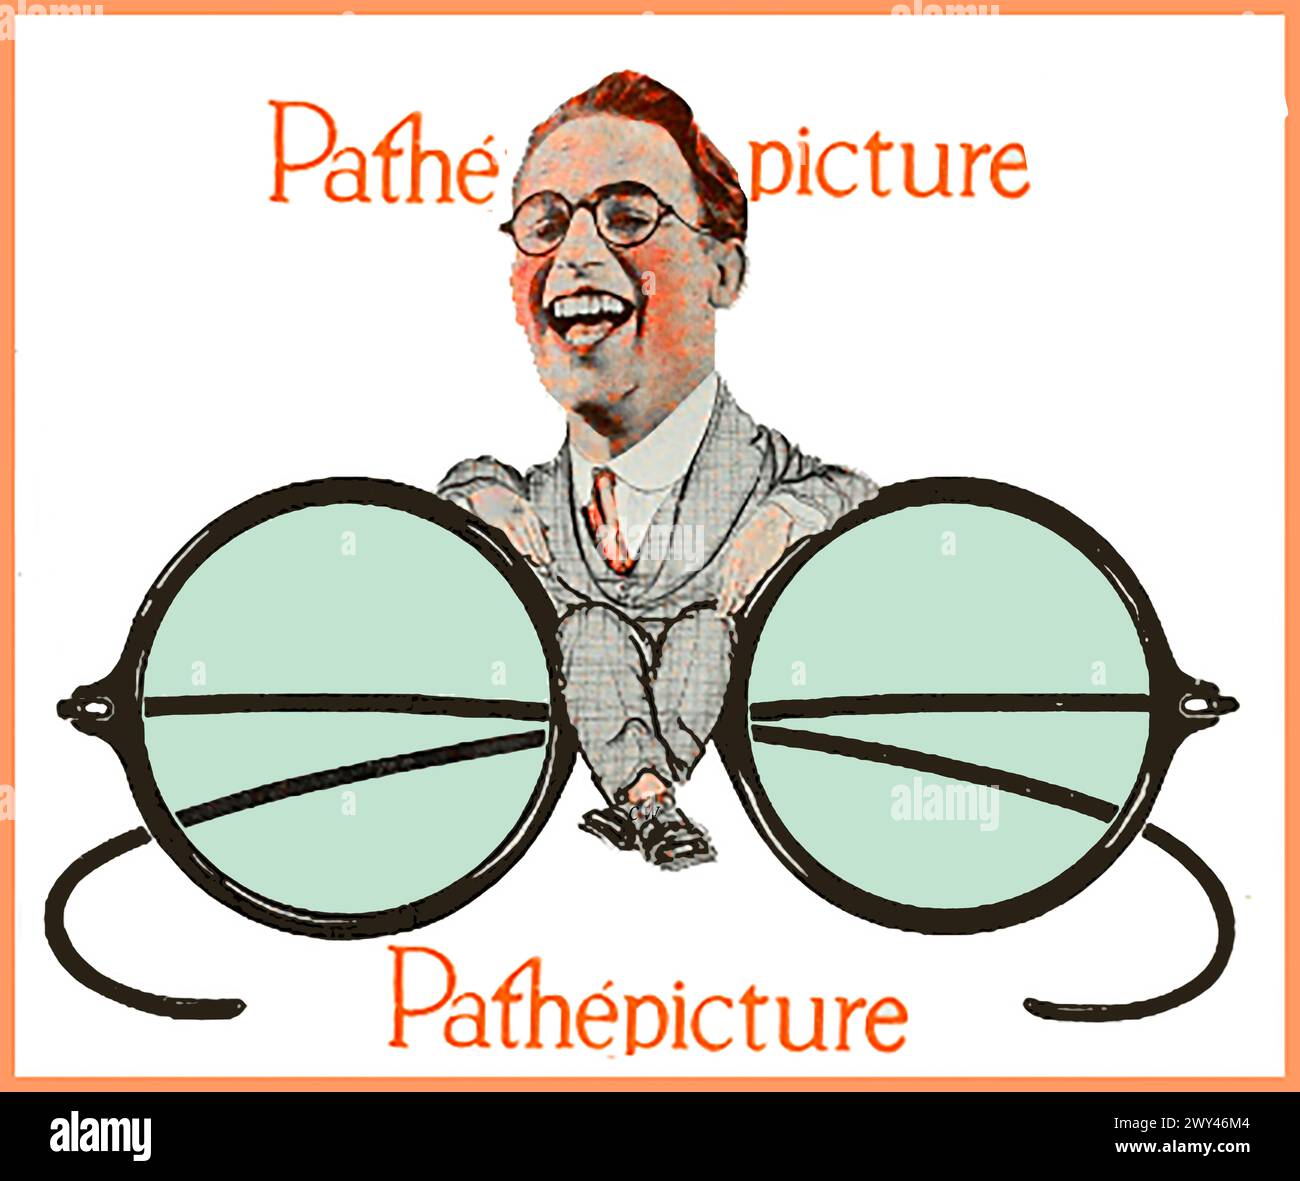 Harold Lloyd, star du cinéma muet, figure sur une affiche de 1926 de Pathe (PathePicture) représentant ses lunettes rondes de marque. Banque D'Images